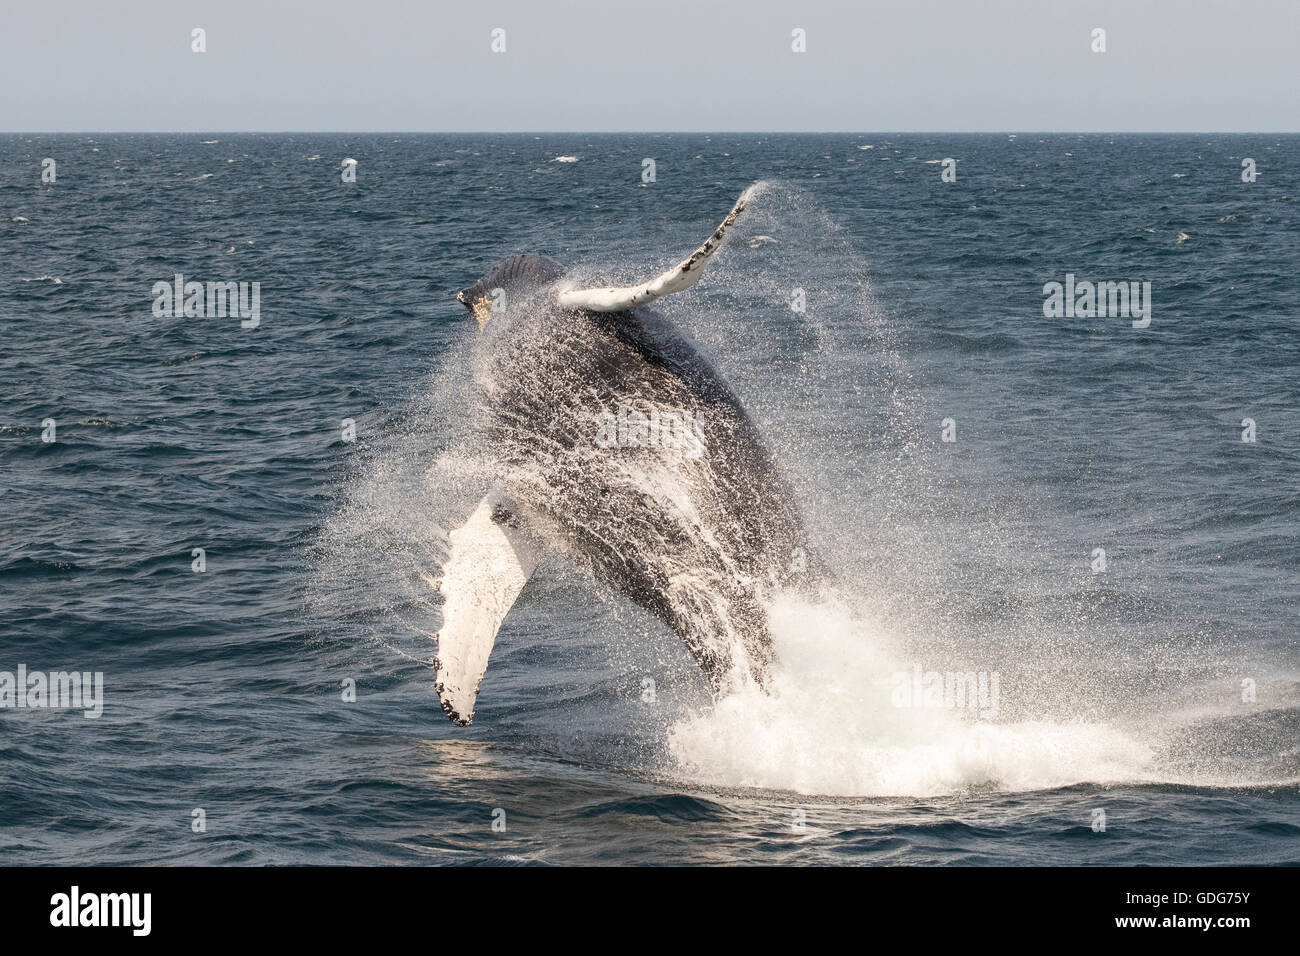 Ballena Jorobada saltando, saltando mientras cerca del Banco Stellwagen de avistamiento de ballenas. (Megaptera novaeangliae) Foto de stock